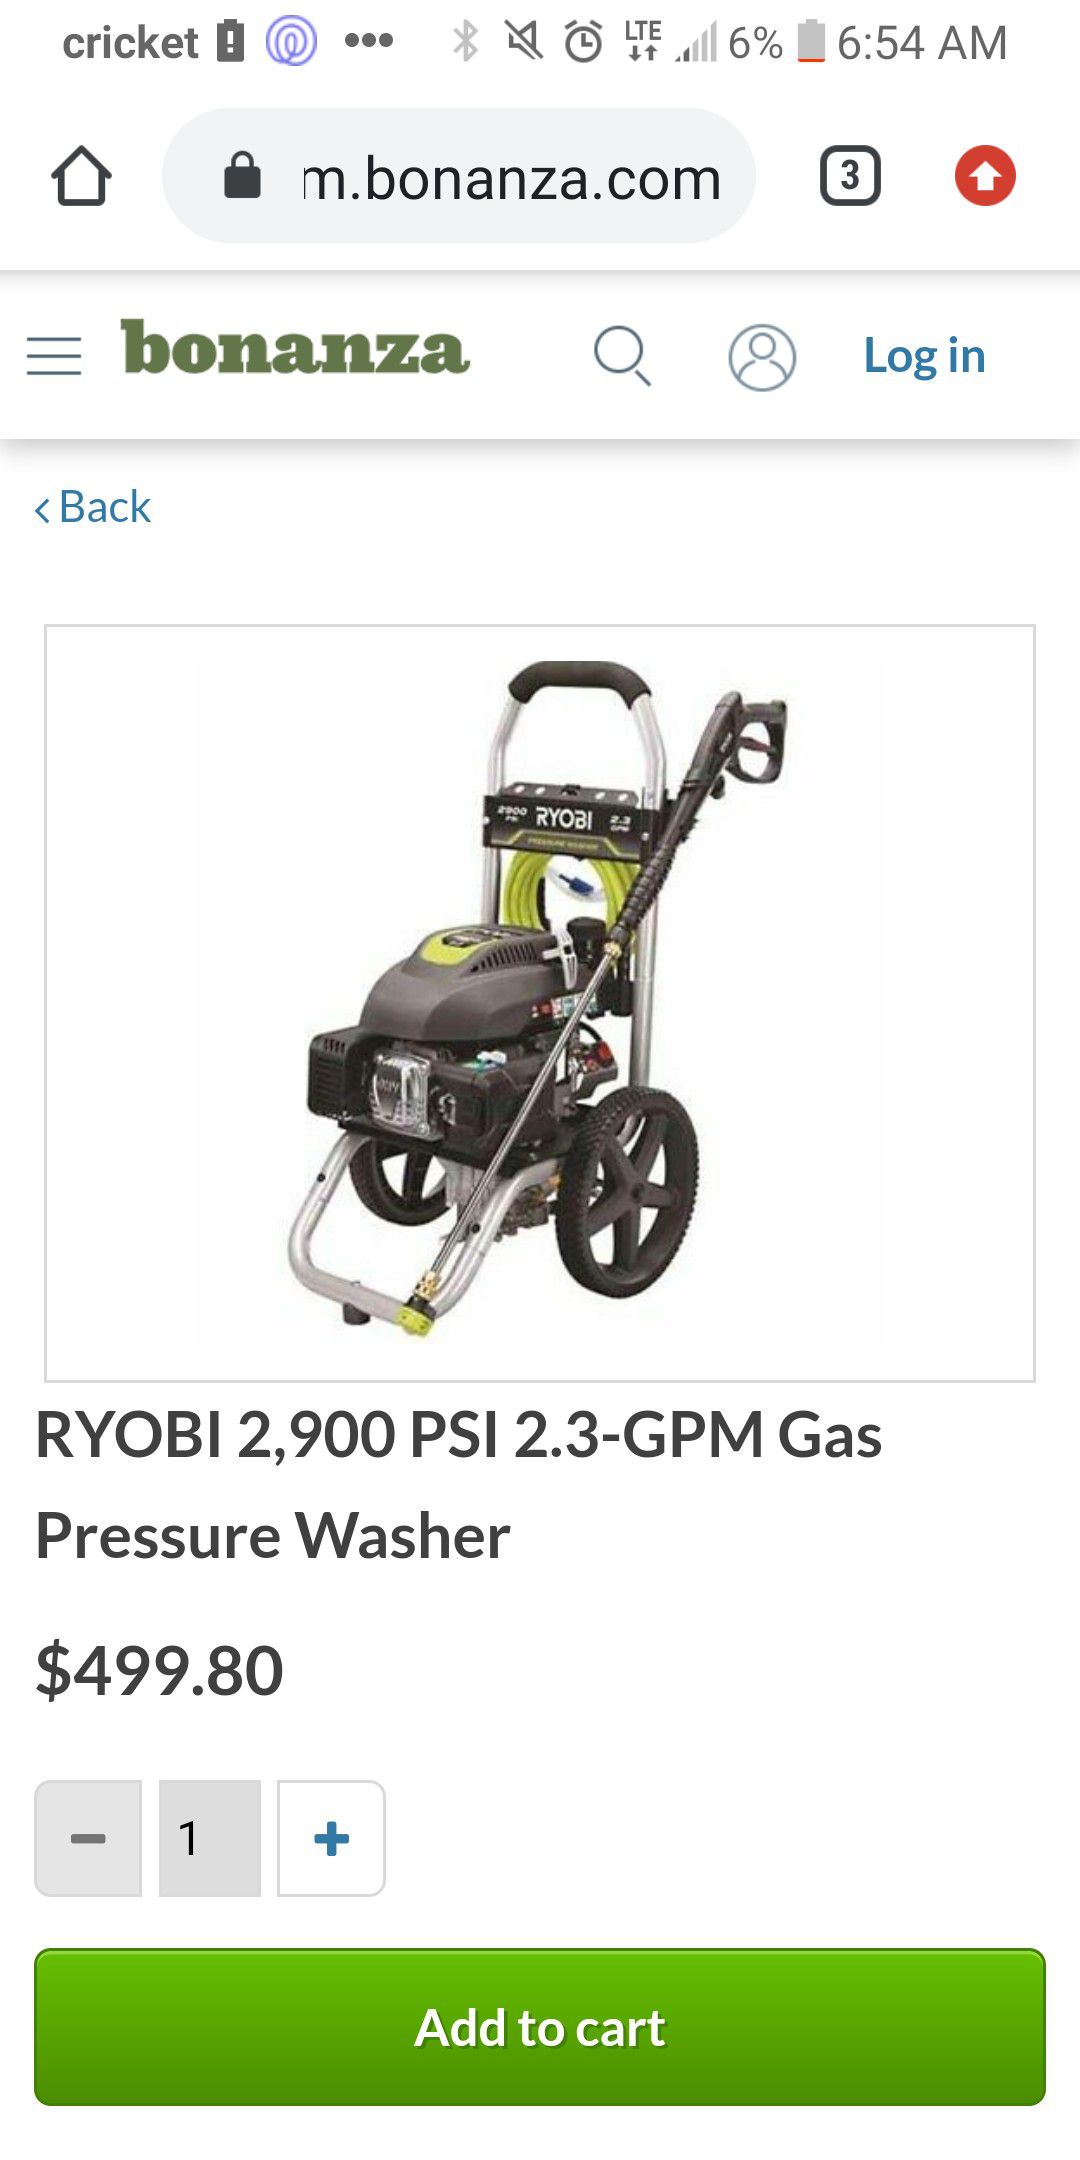 2900 psi pressure washer makr offer